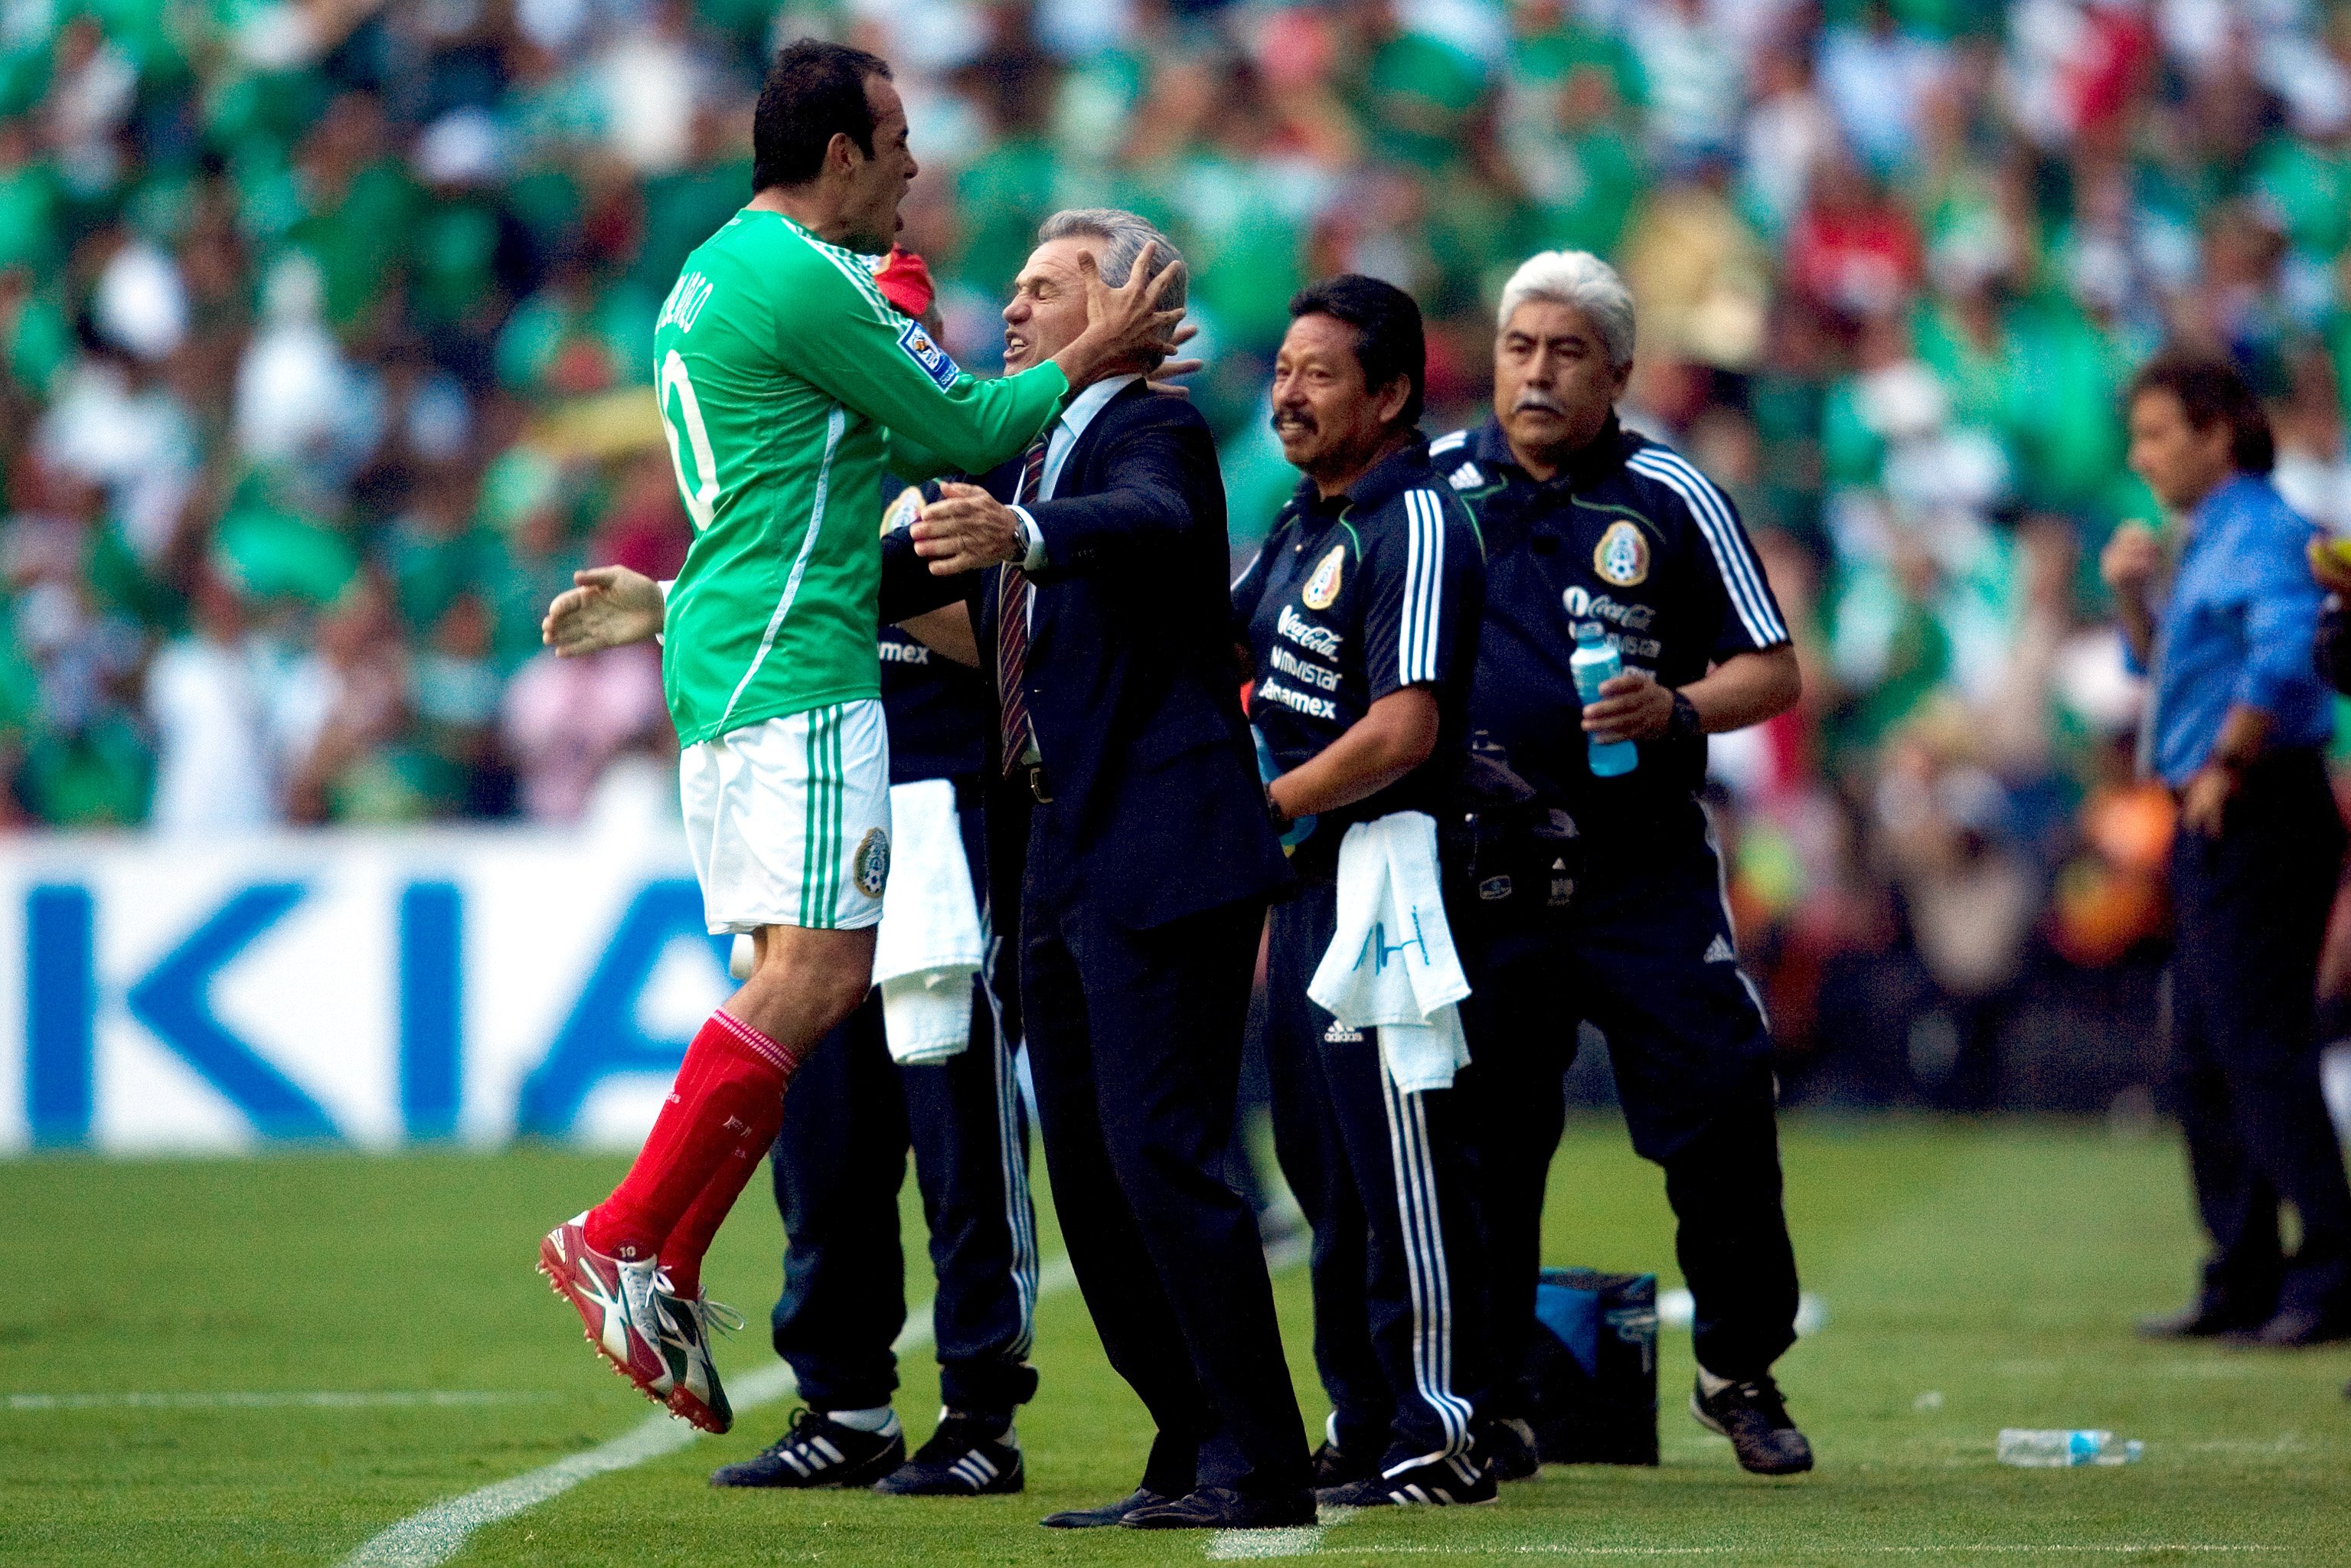 Cuauhtémoc Blanco es el jugador más talentoso de México: Aguirre 